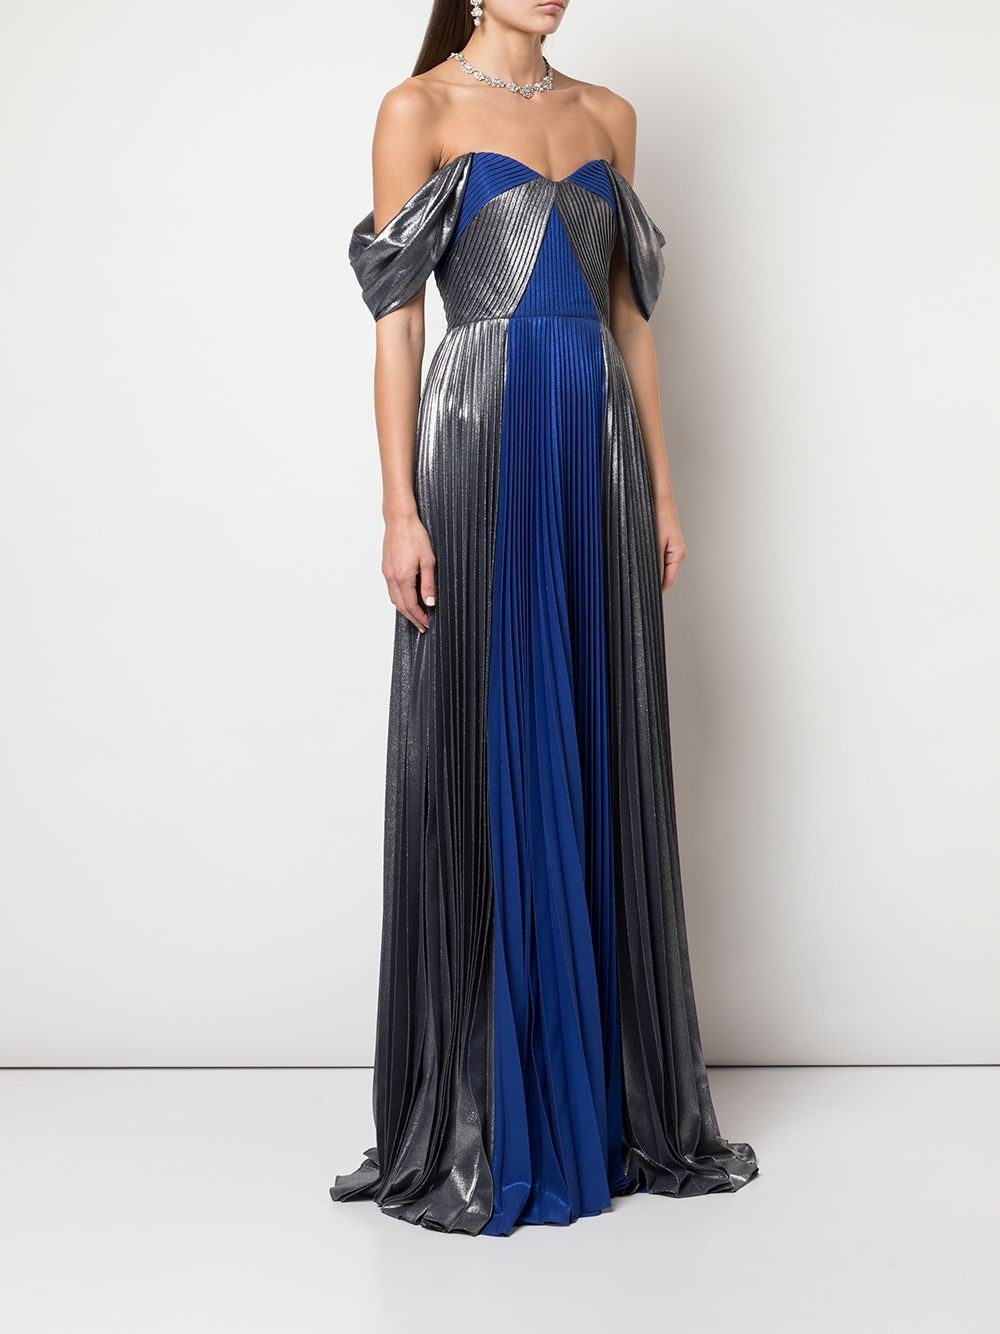 фото Marchesa notte плиссированное платье с эффектом металлик